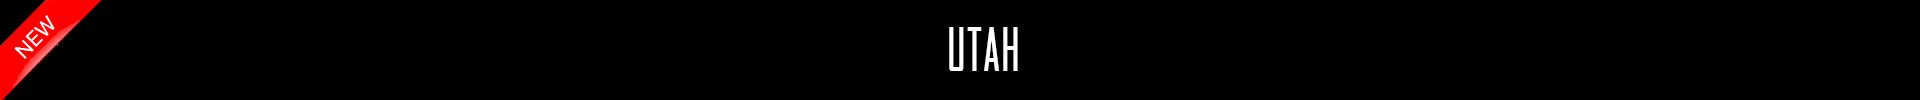 TOTALPRESTIGE MAGAZINE - UTAH